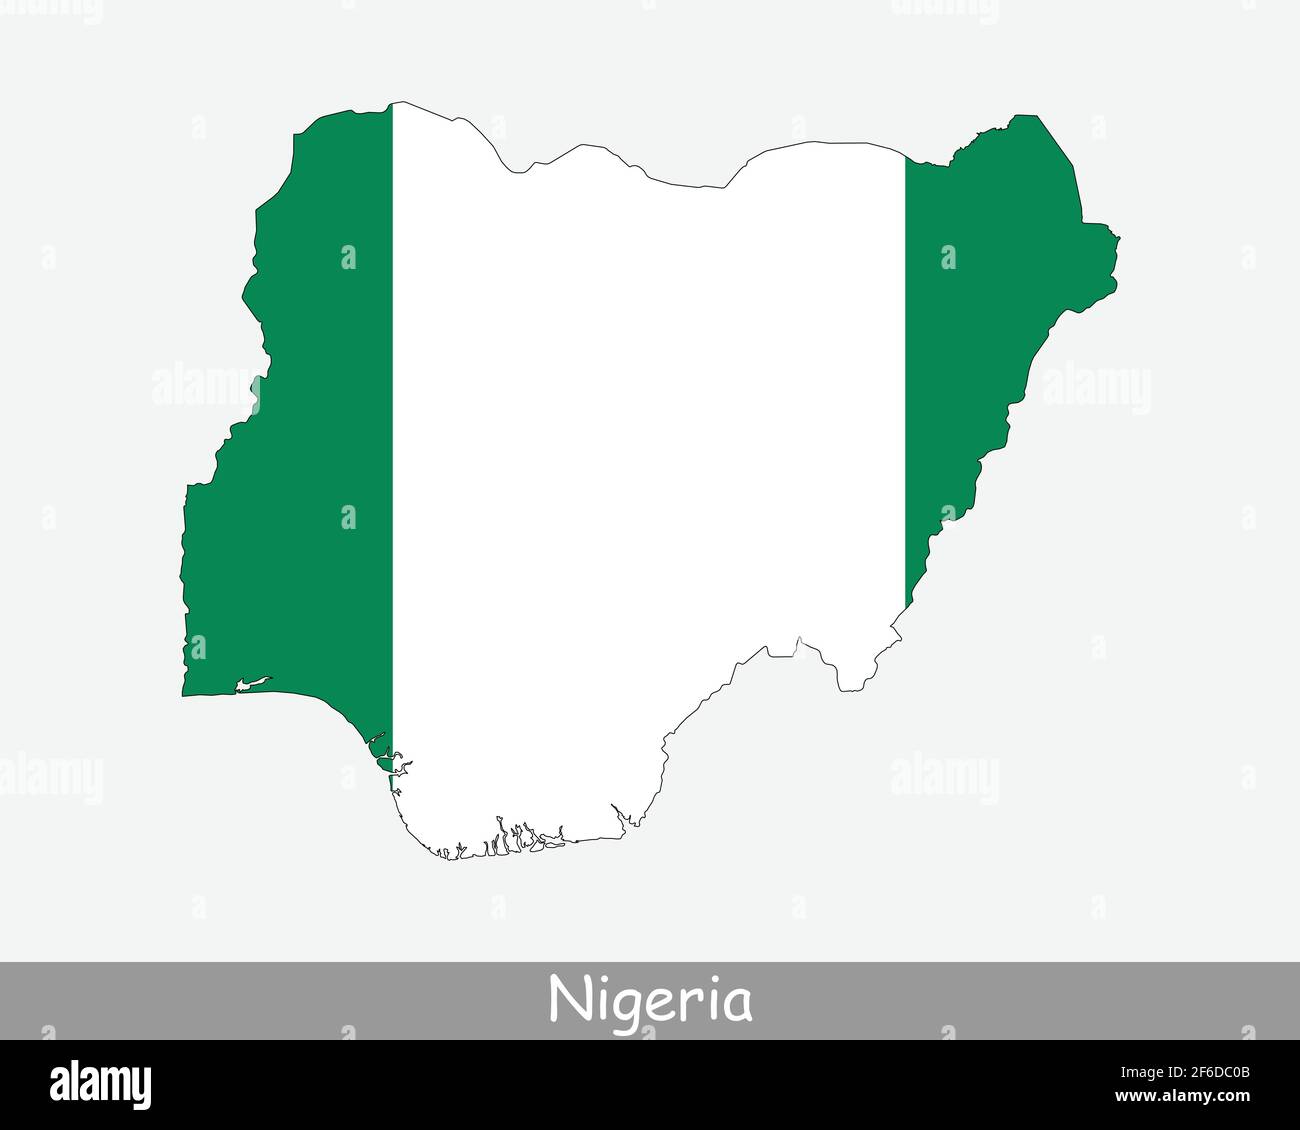 Mappa della bandiera della Nigeria. Mappa della Repubblica federale di Nigeria con la bandiera nazionale nigeriana isolata su sfondo bianco. Illustrazione vettoriale. Illustrazione Vettoriale